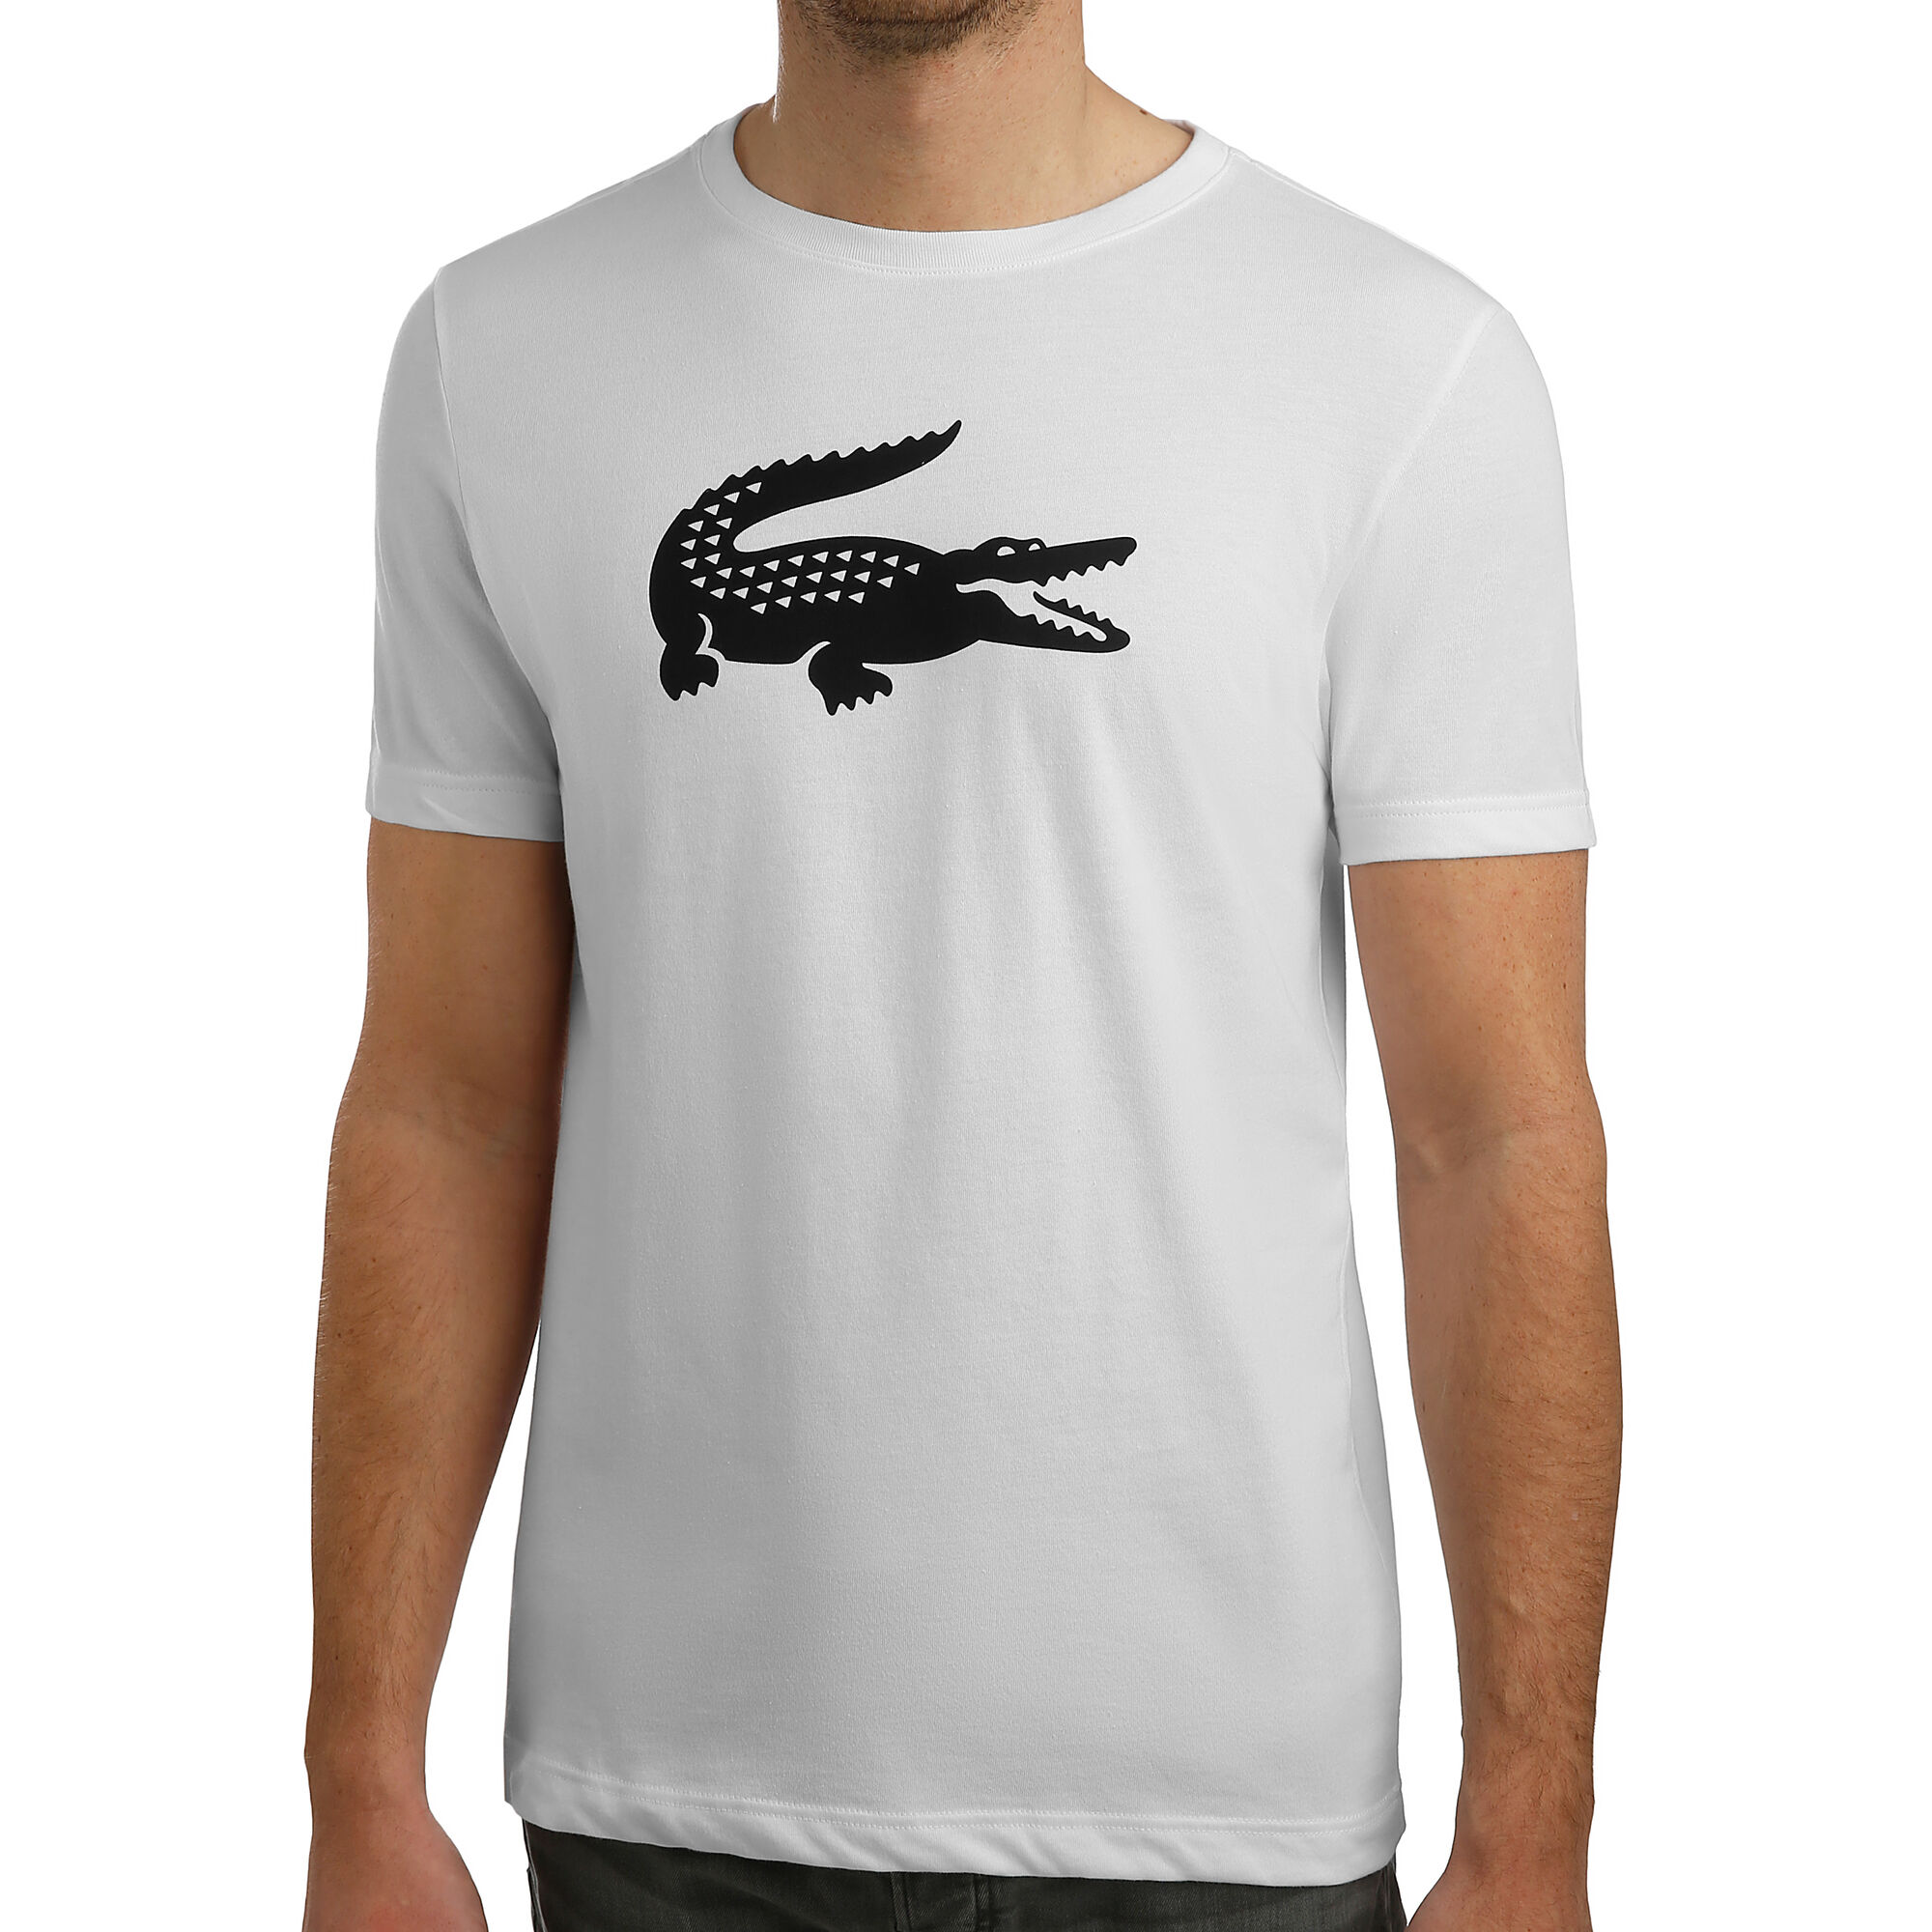 Lacoste Logo T-Shirt Herren Weiß, Schwarz online kaufen | Tennis Point AT